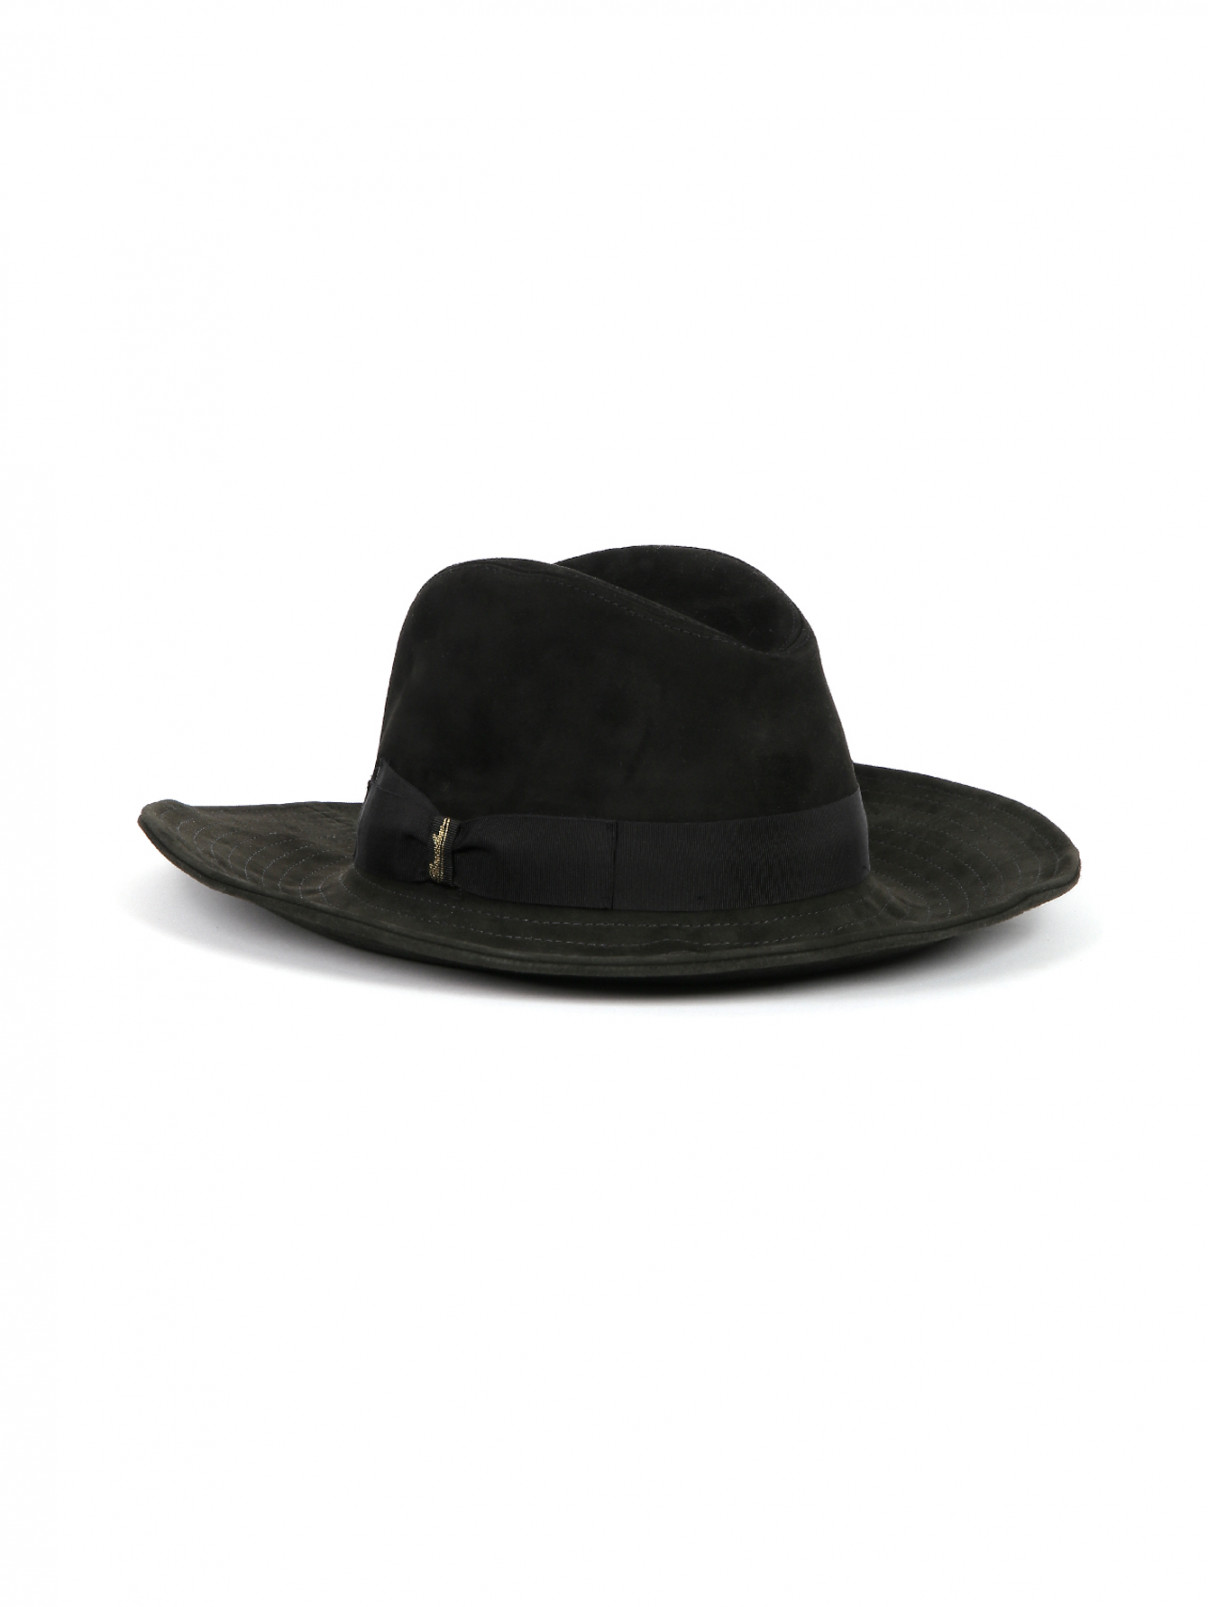 Шляпа замшевая декорированная репсовой лентой Borsalino  –  Общий вид  – Цвет:  Черный